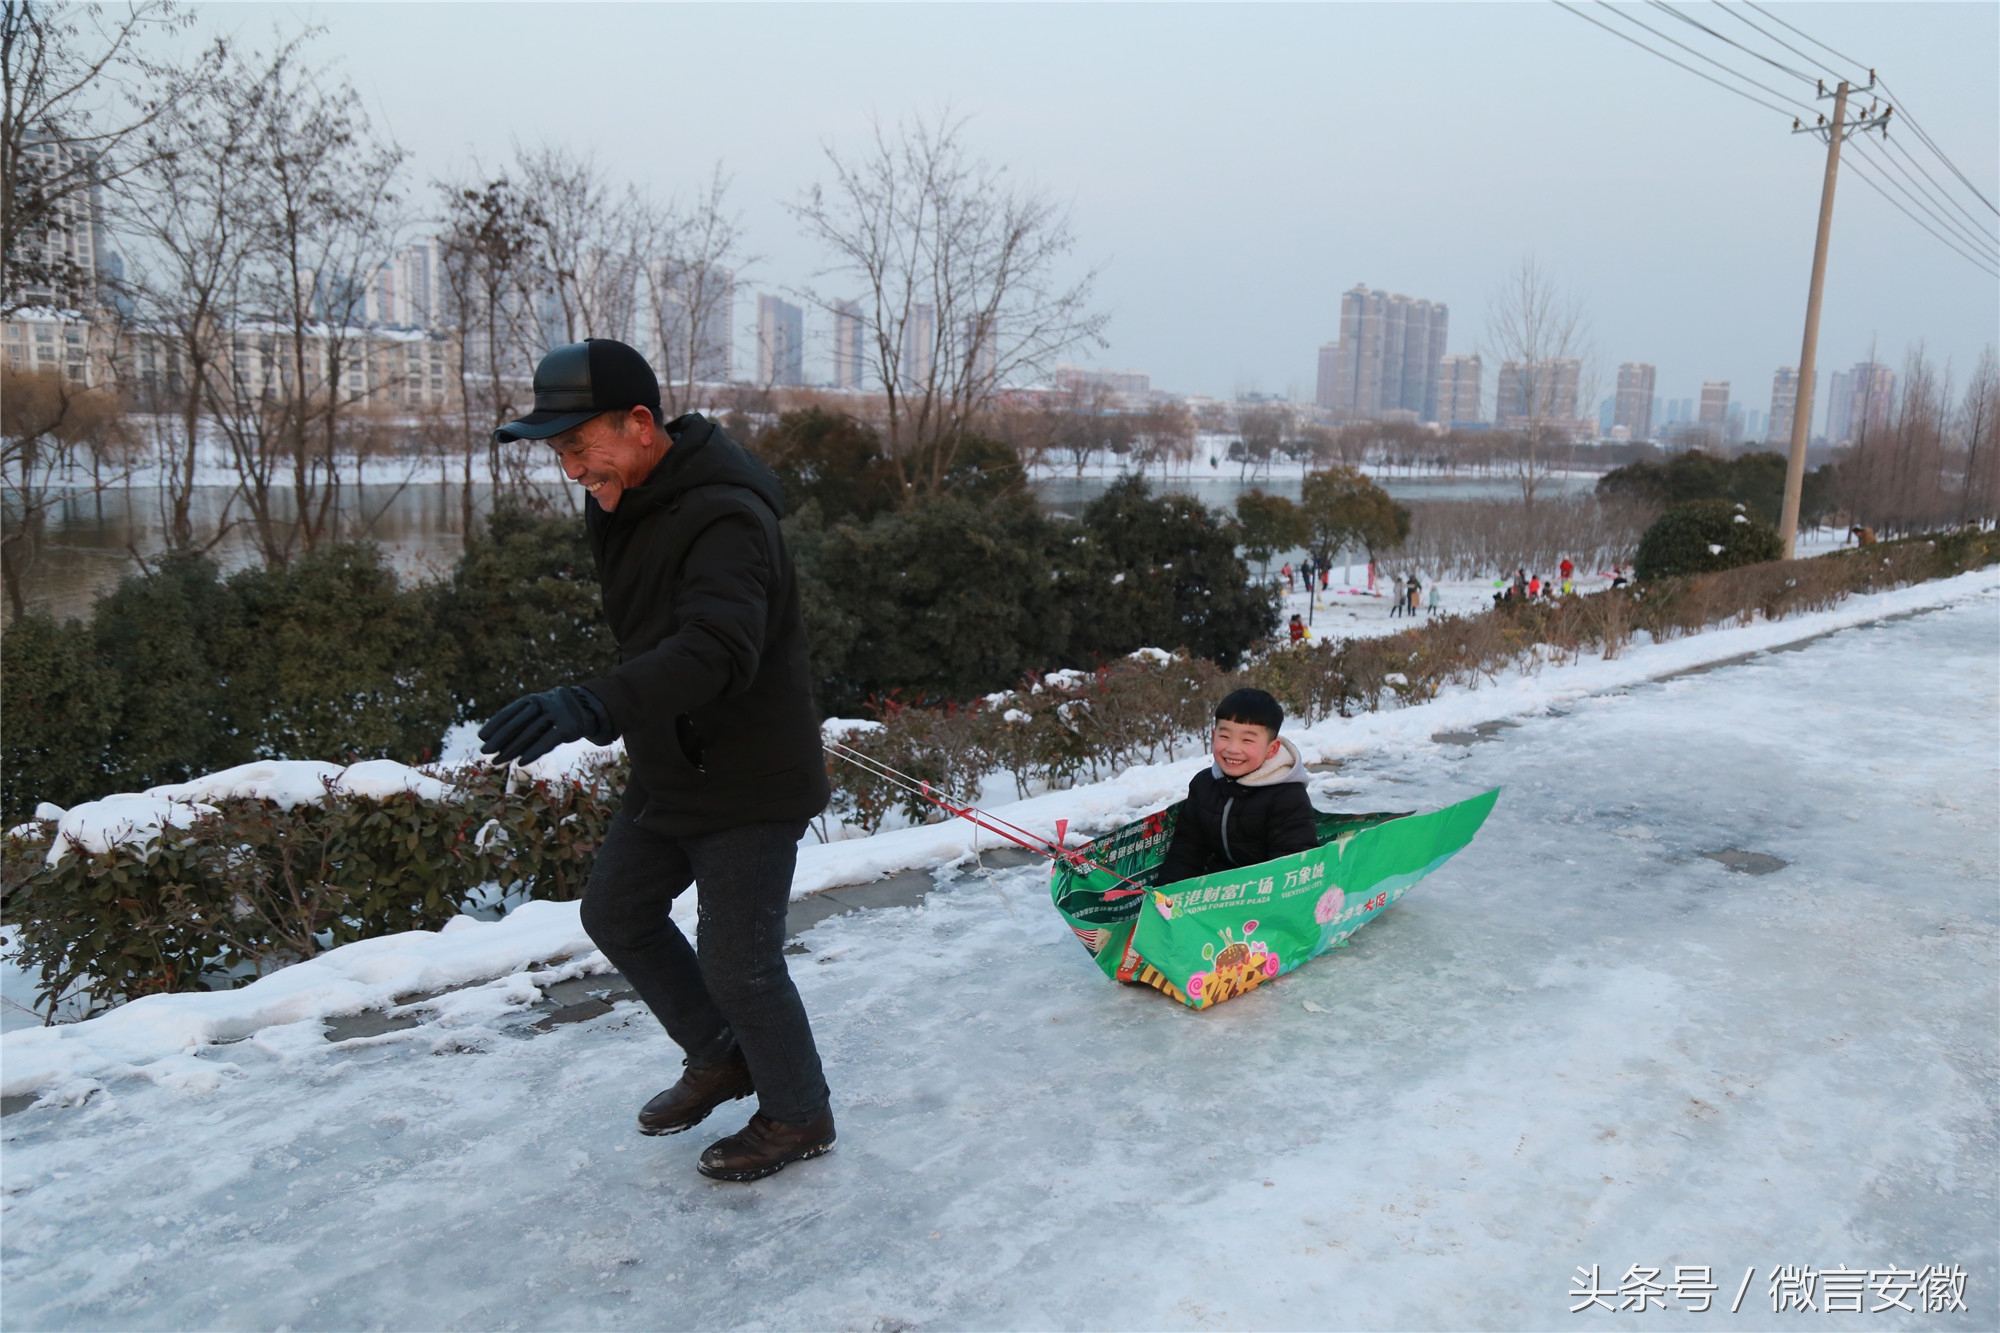 图为1月29日,滑雪结束后,一名儿童坐在自制的滑雪袋上,让爷爷拉着回家